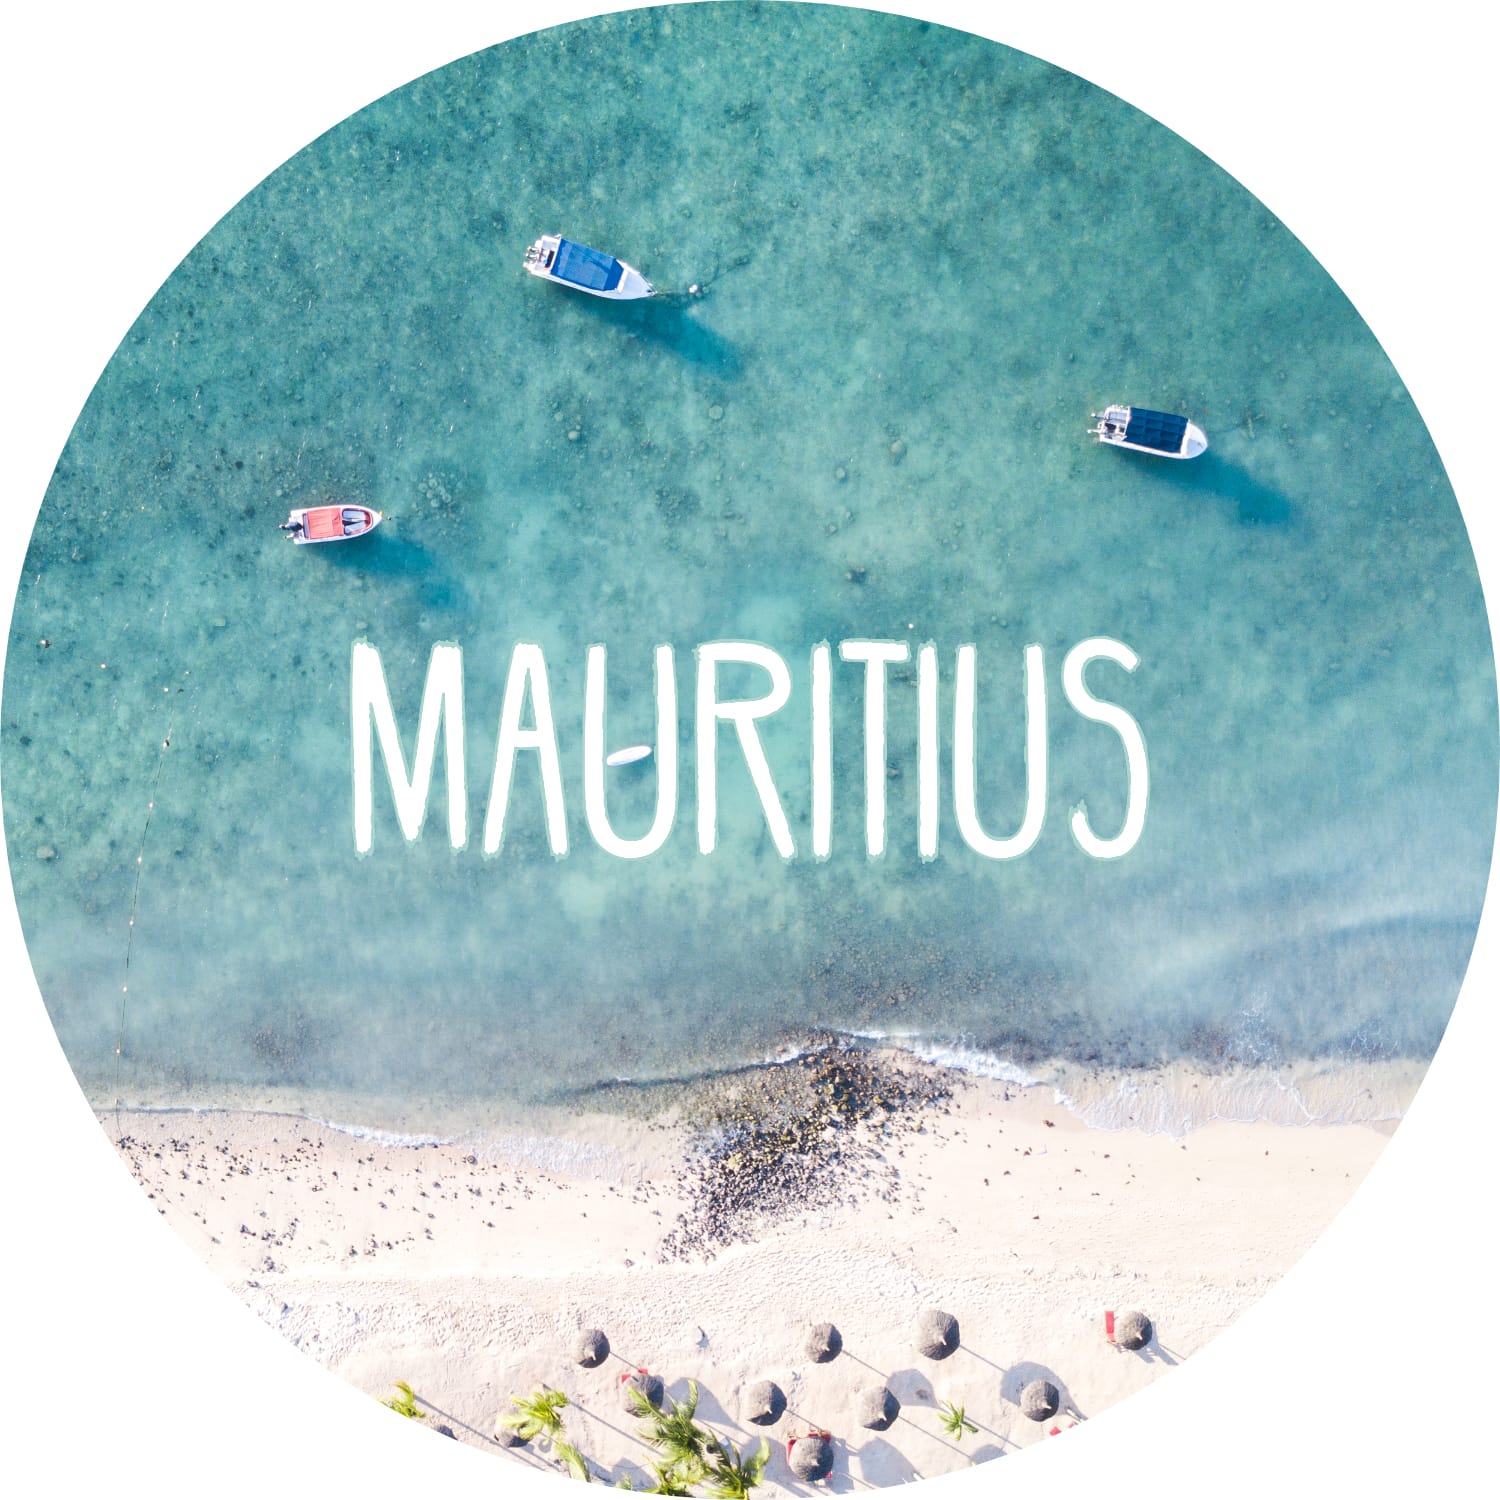 Mauritius Blog: Reisetipps, Insidertipps & Sehenswürdigkeiten